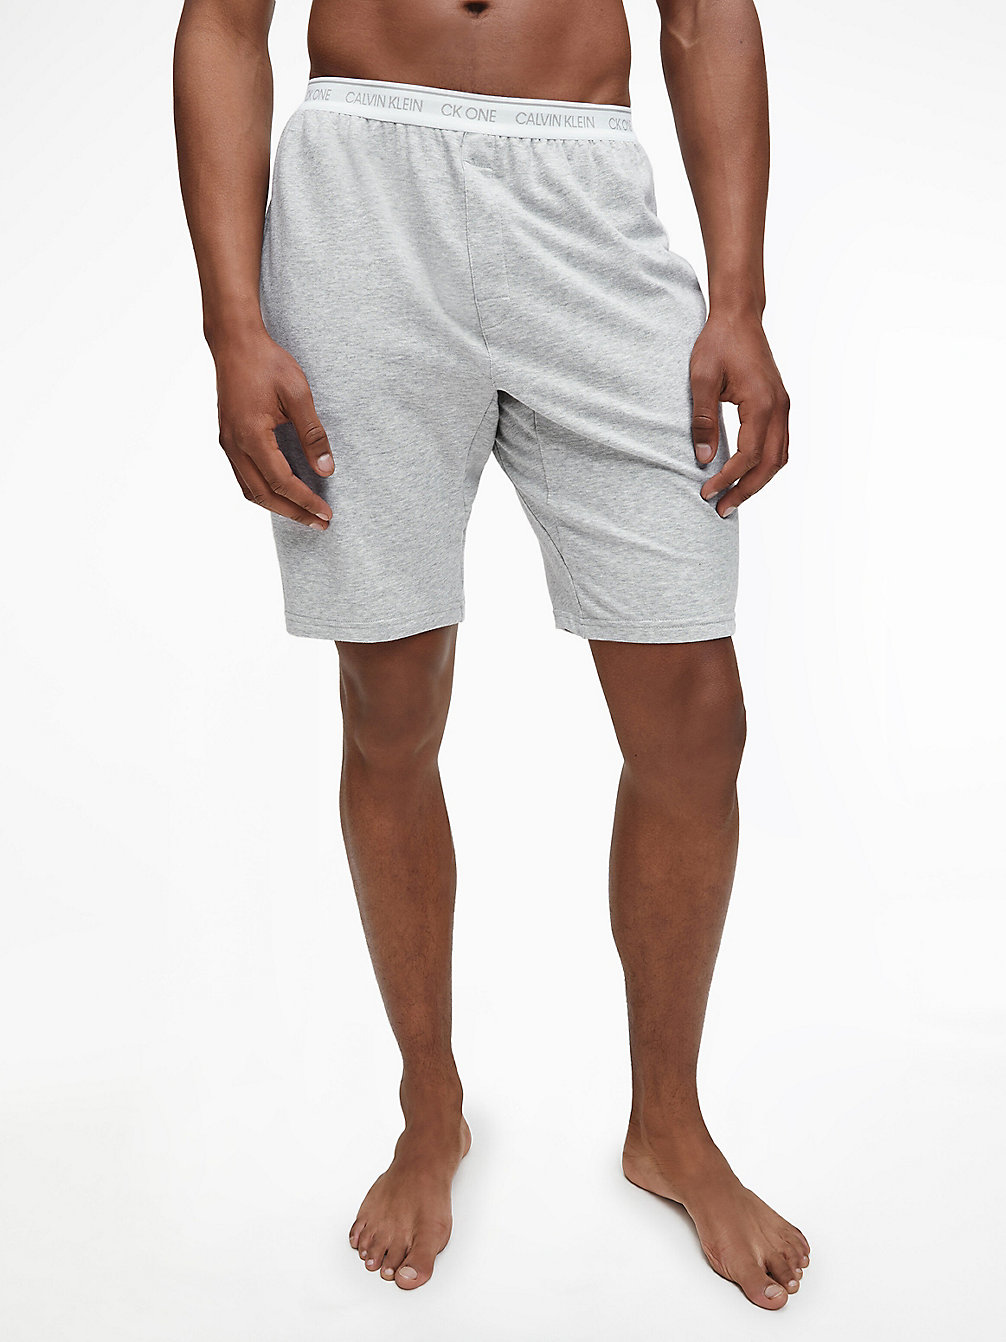 GREY HEATHER Lounge Shorts - CK One undefined men Calvin Klein